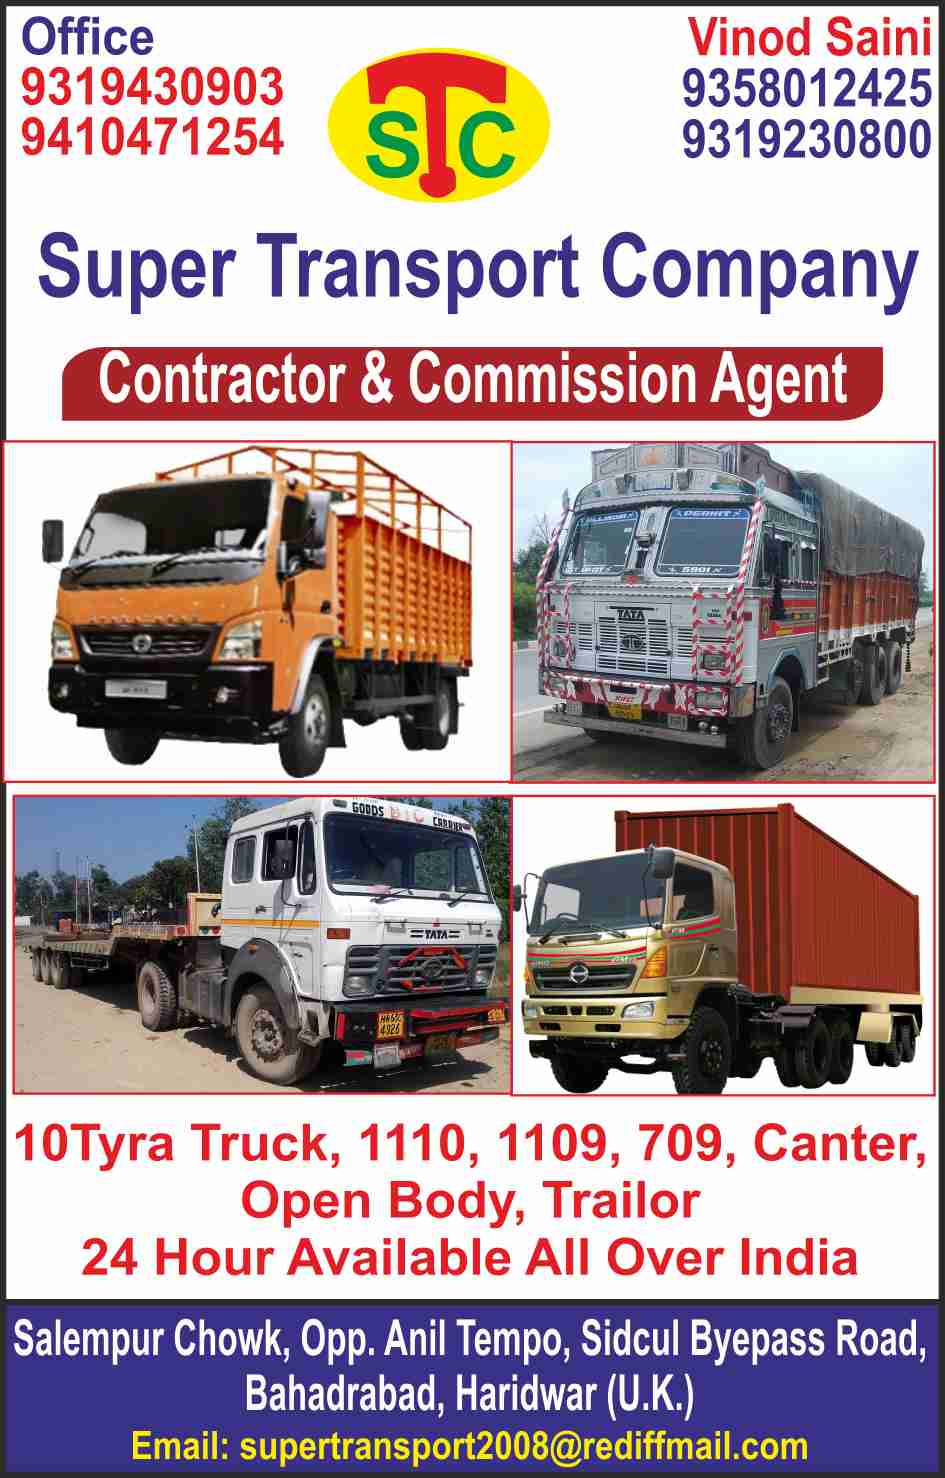 Транспортно-логистические услуги Paper Transport, Inc. 